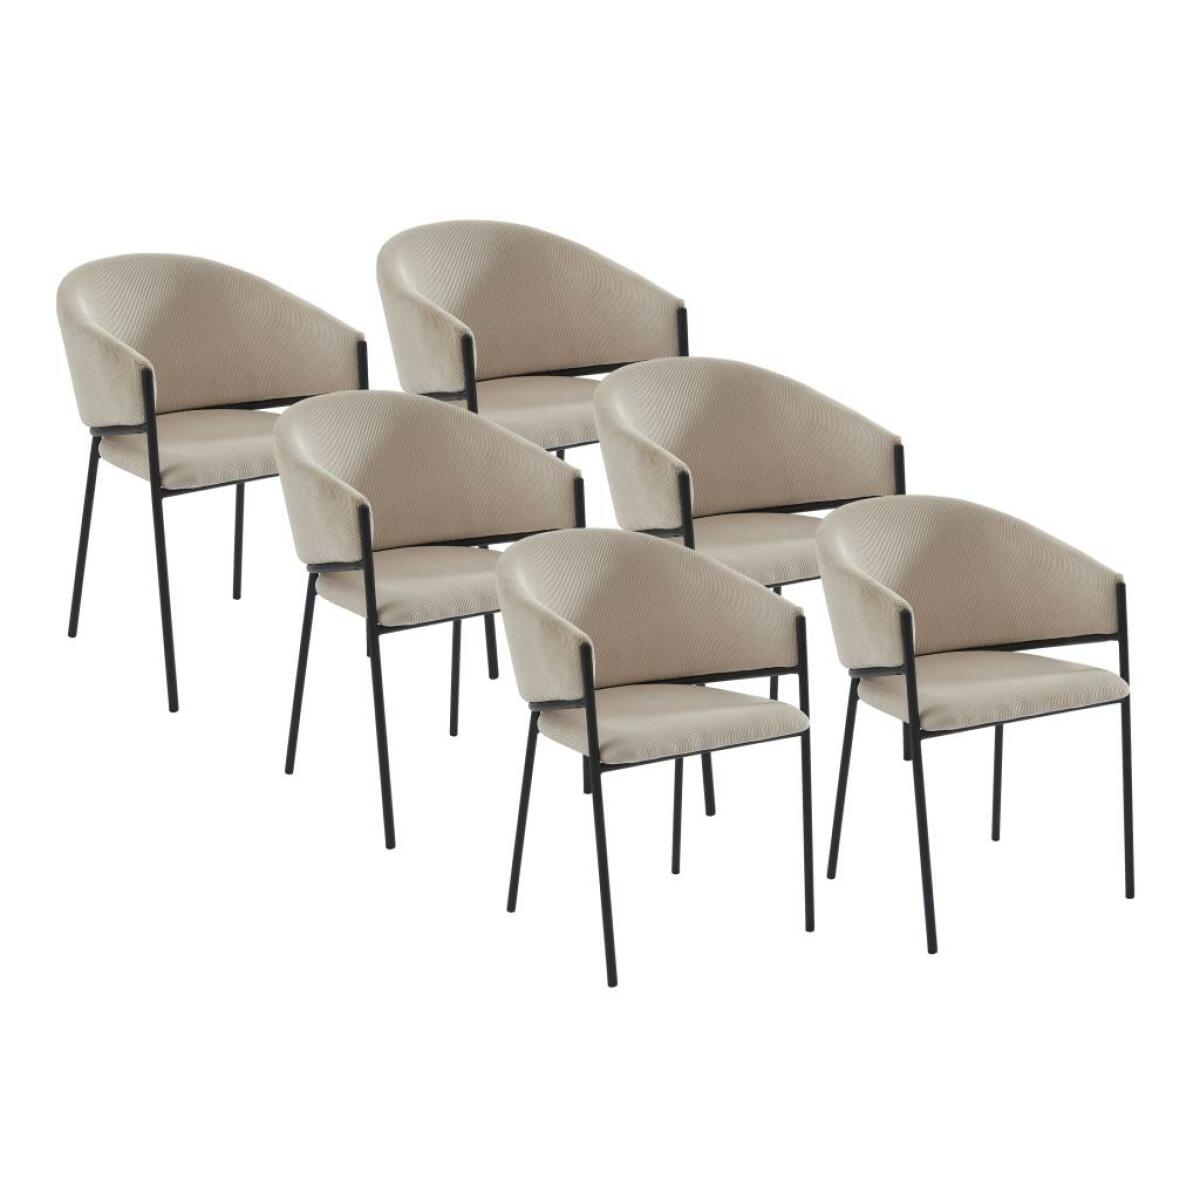 pascal morabito lot de 6 chaises avec accoudoirs en velours côtelé et métal noir - crème - ordida de pascal morabito  crème